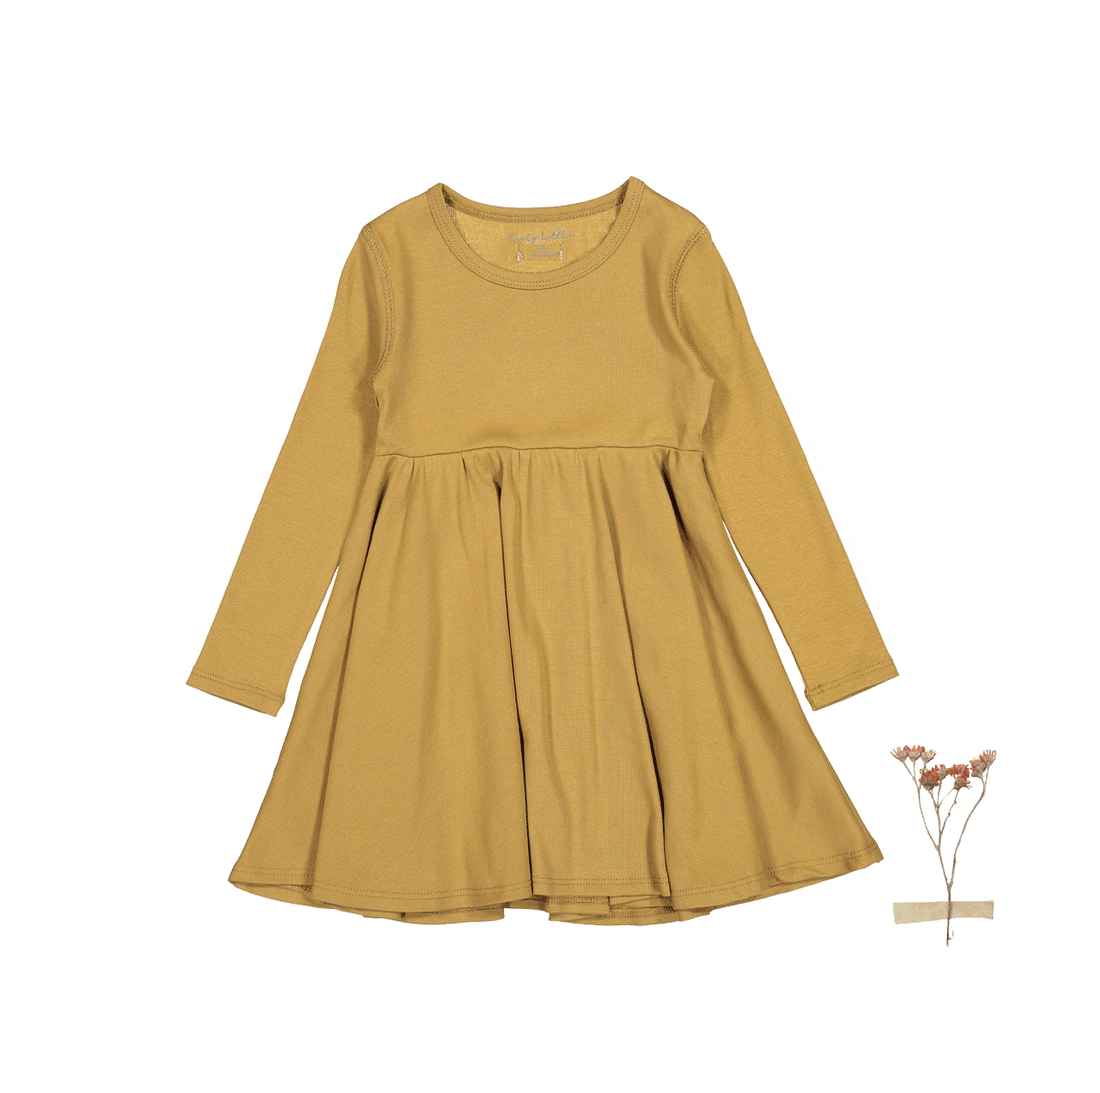 The Long Sleeve Dress - Golden